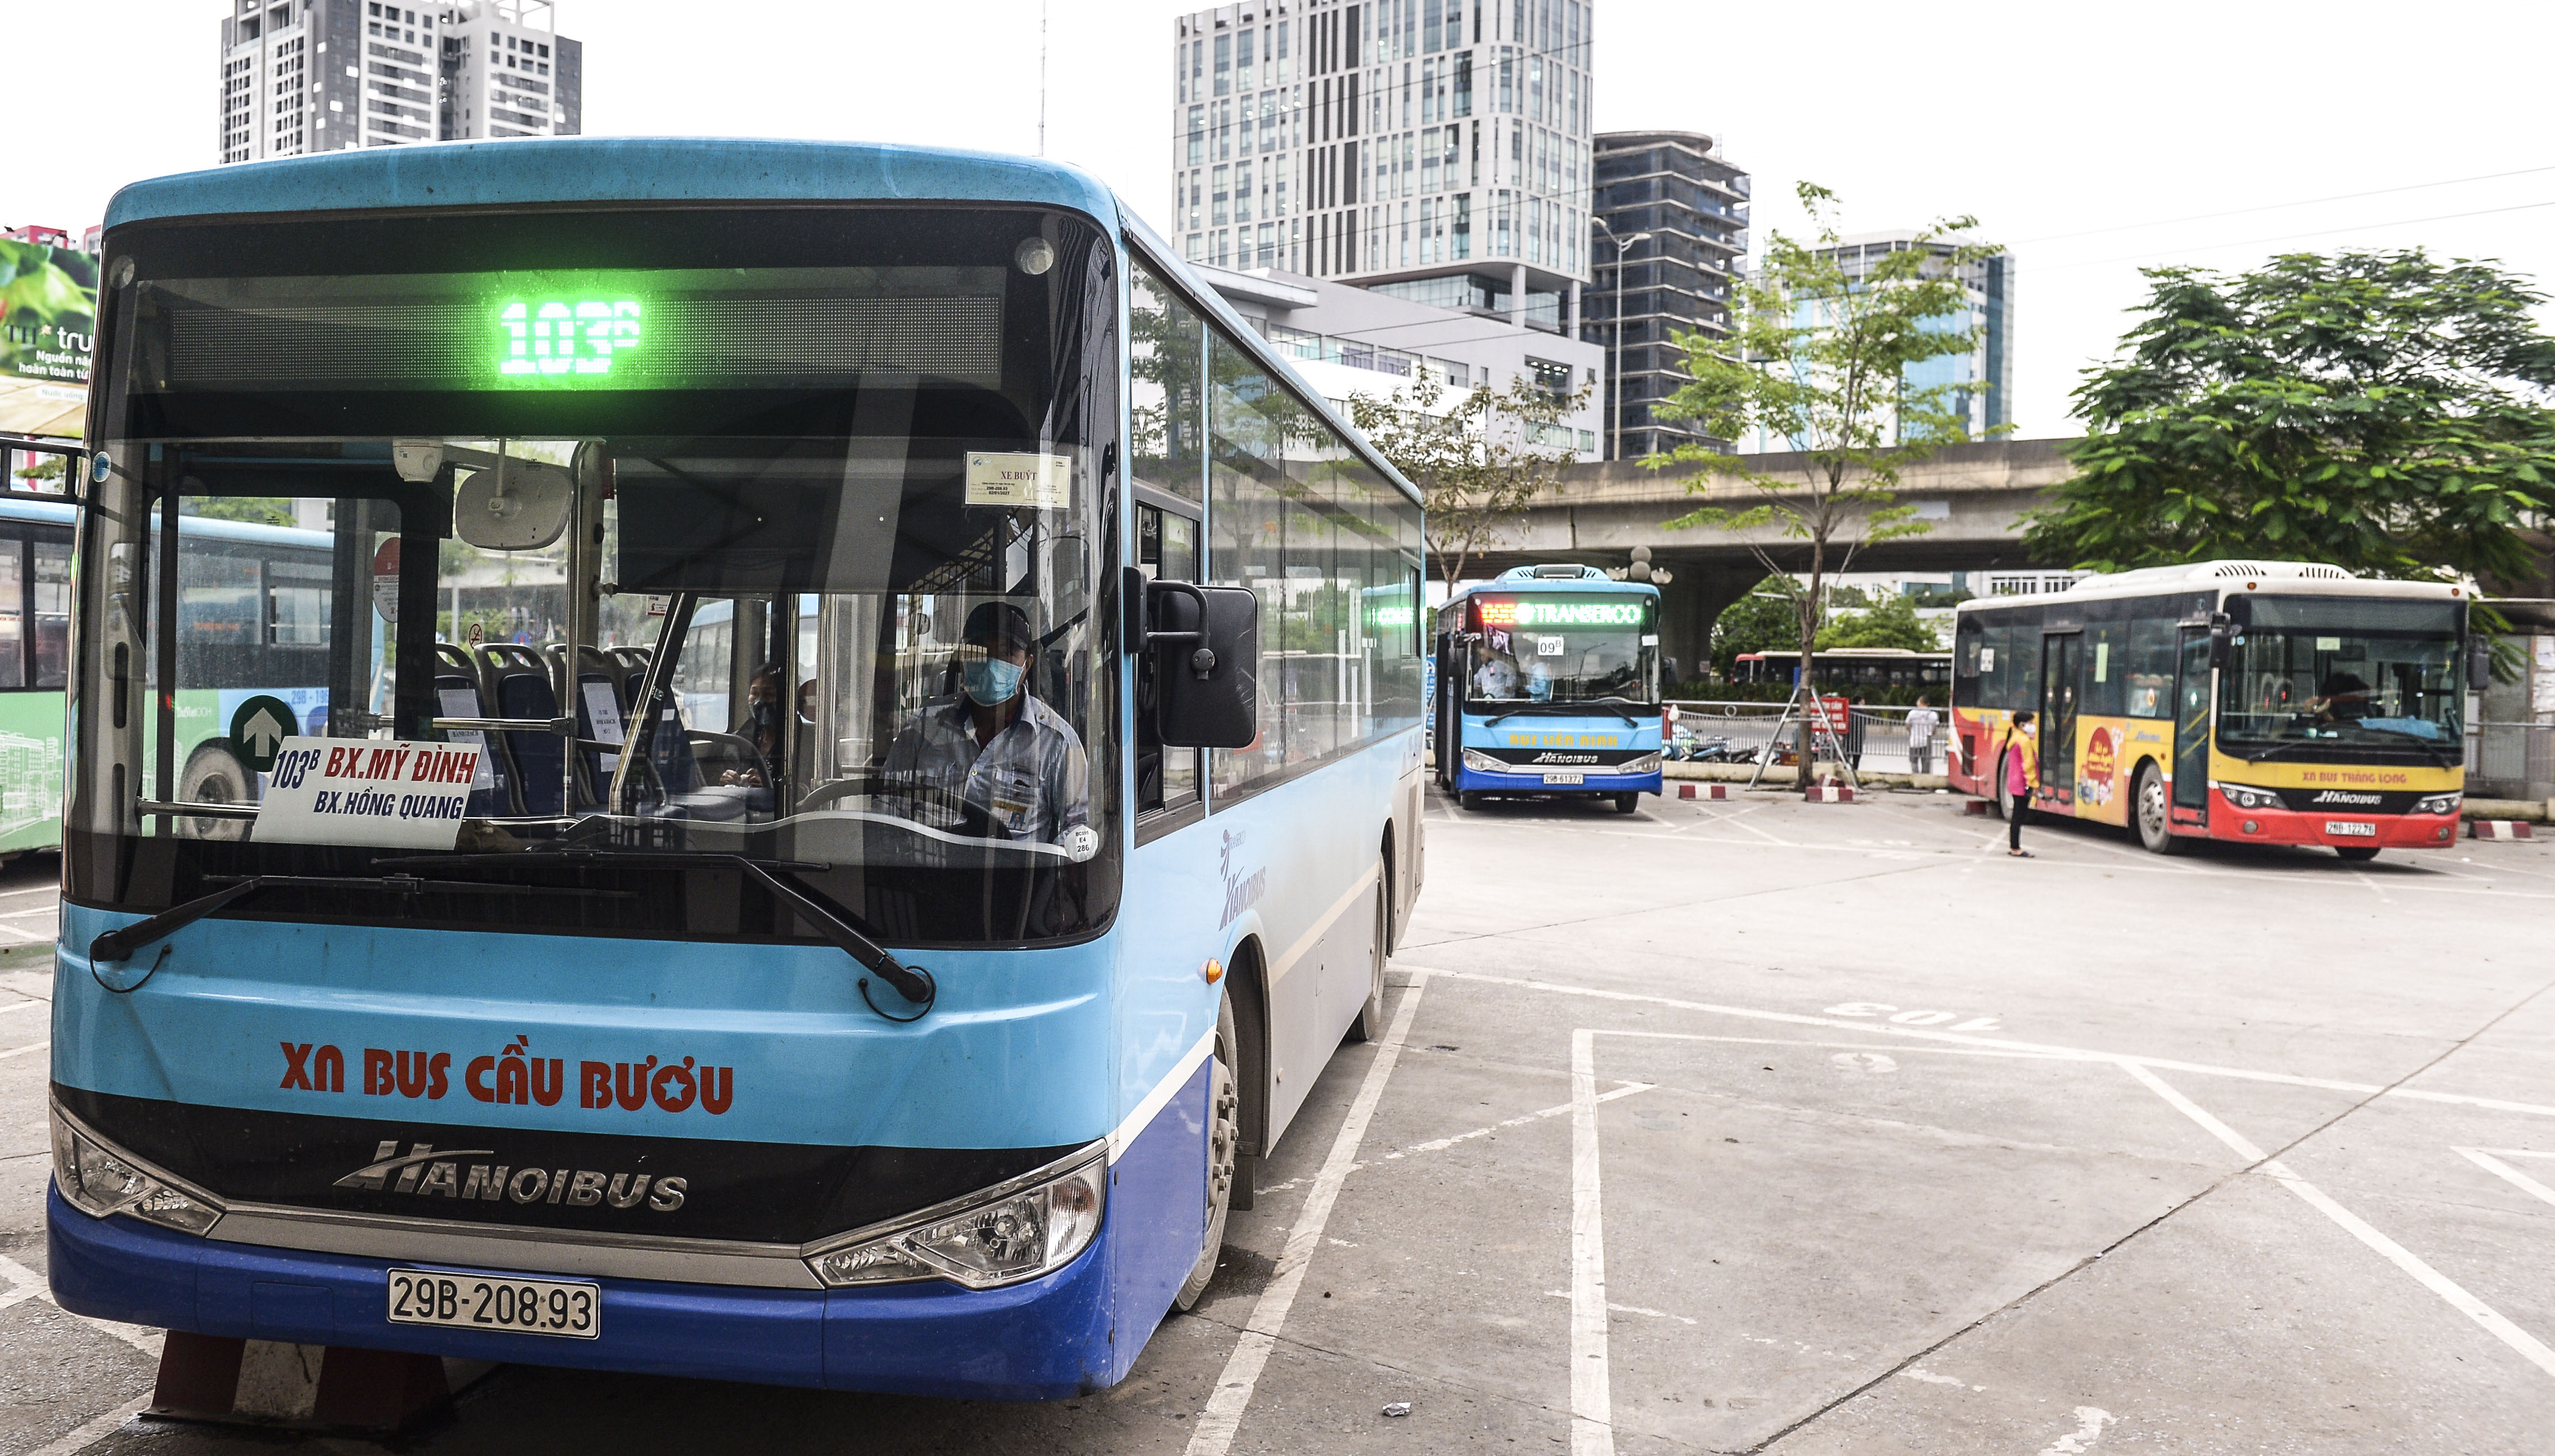 Độc đáo ở Hà Nội, ghế ngồi trên xe buýt được đánh số đảm bảo hành khách ...